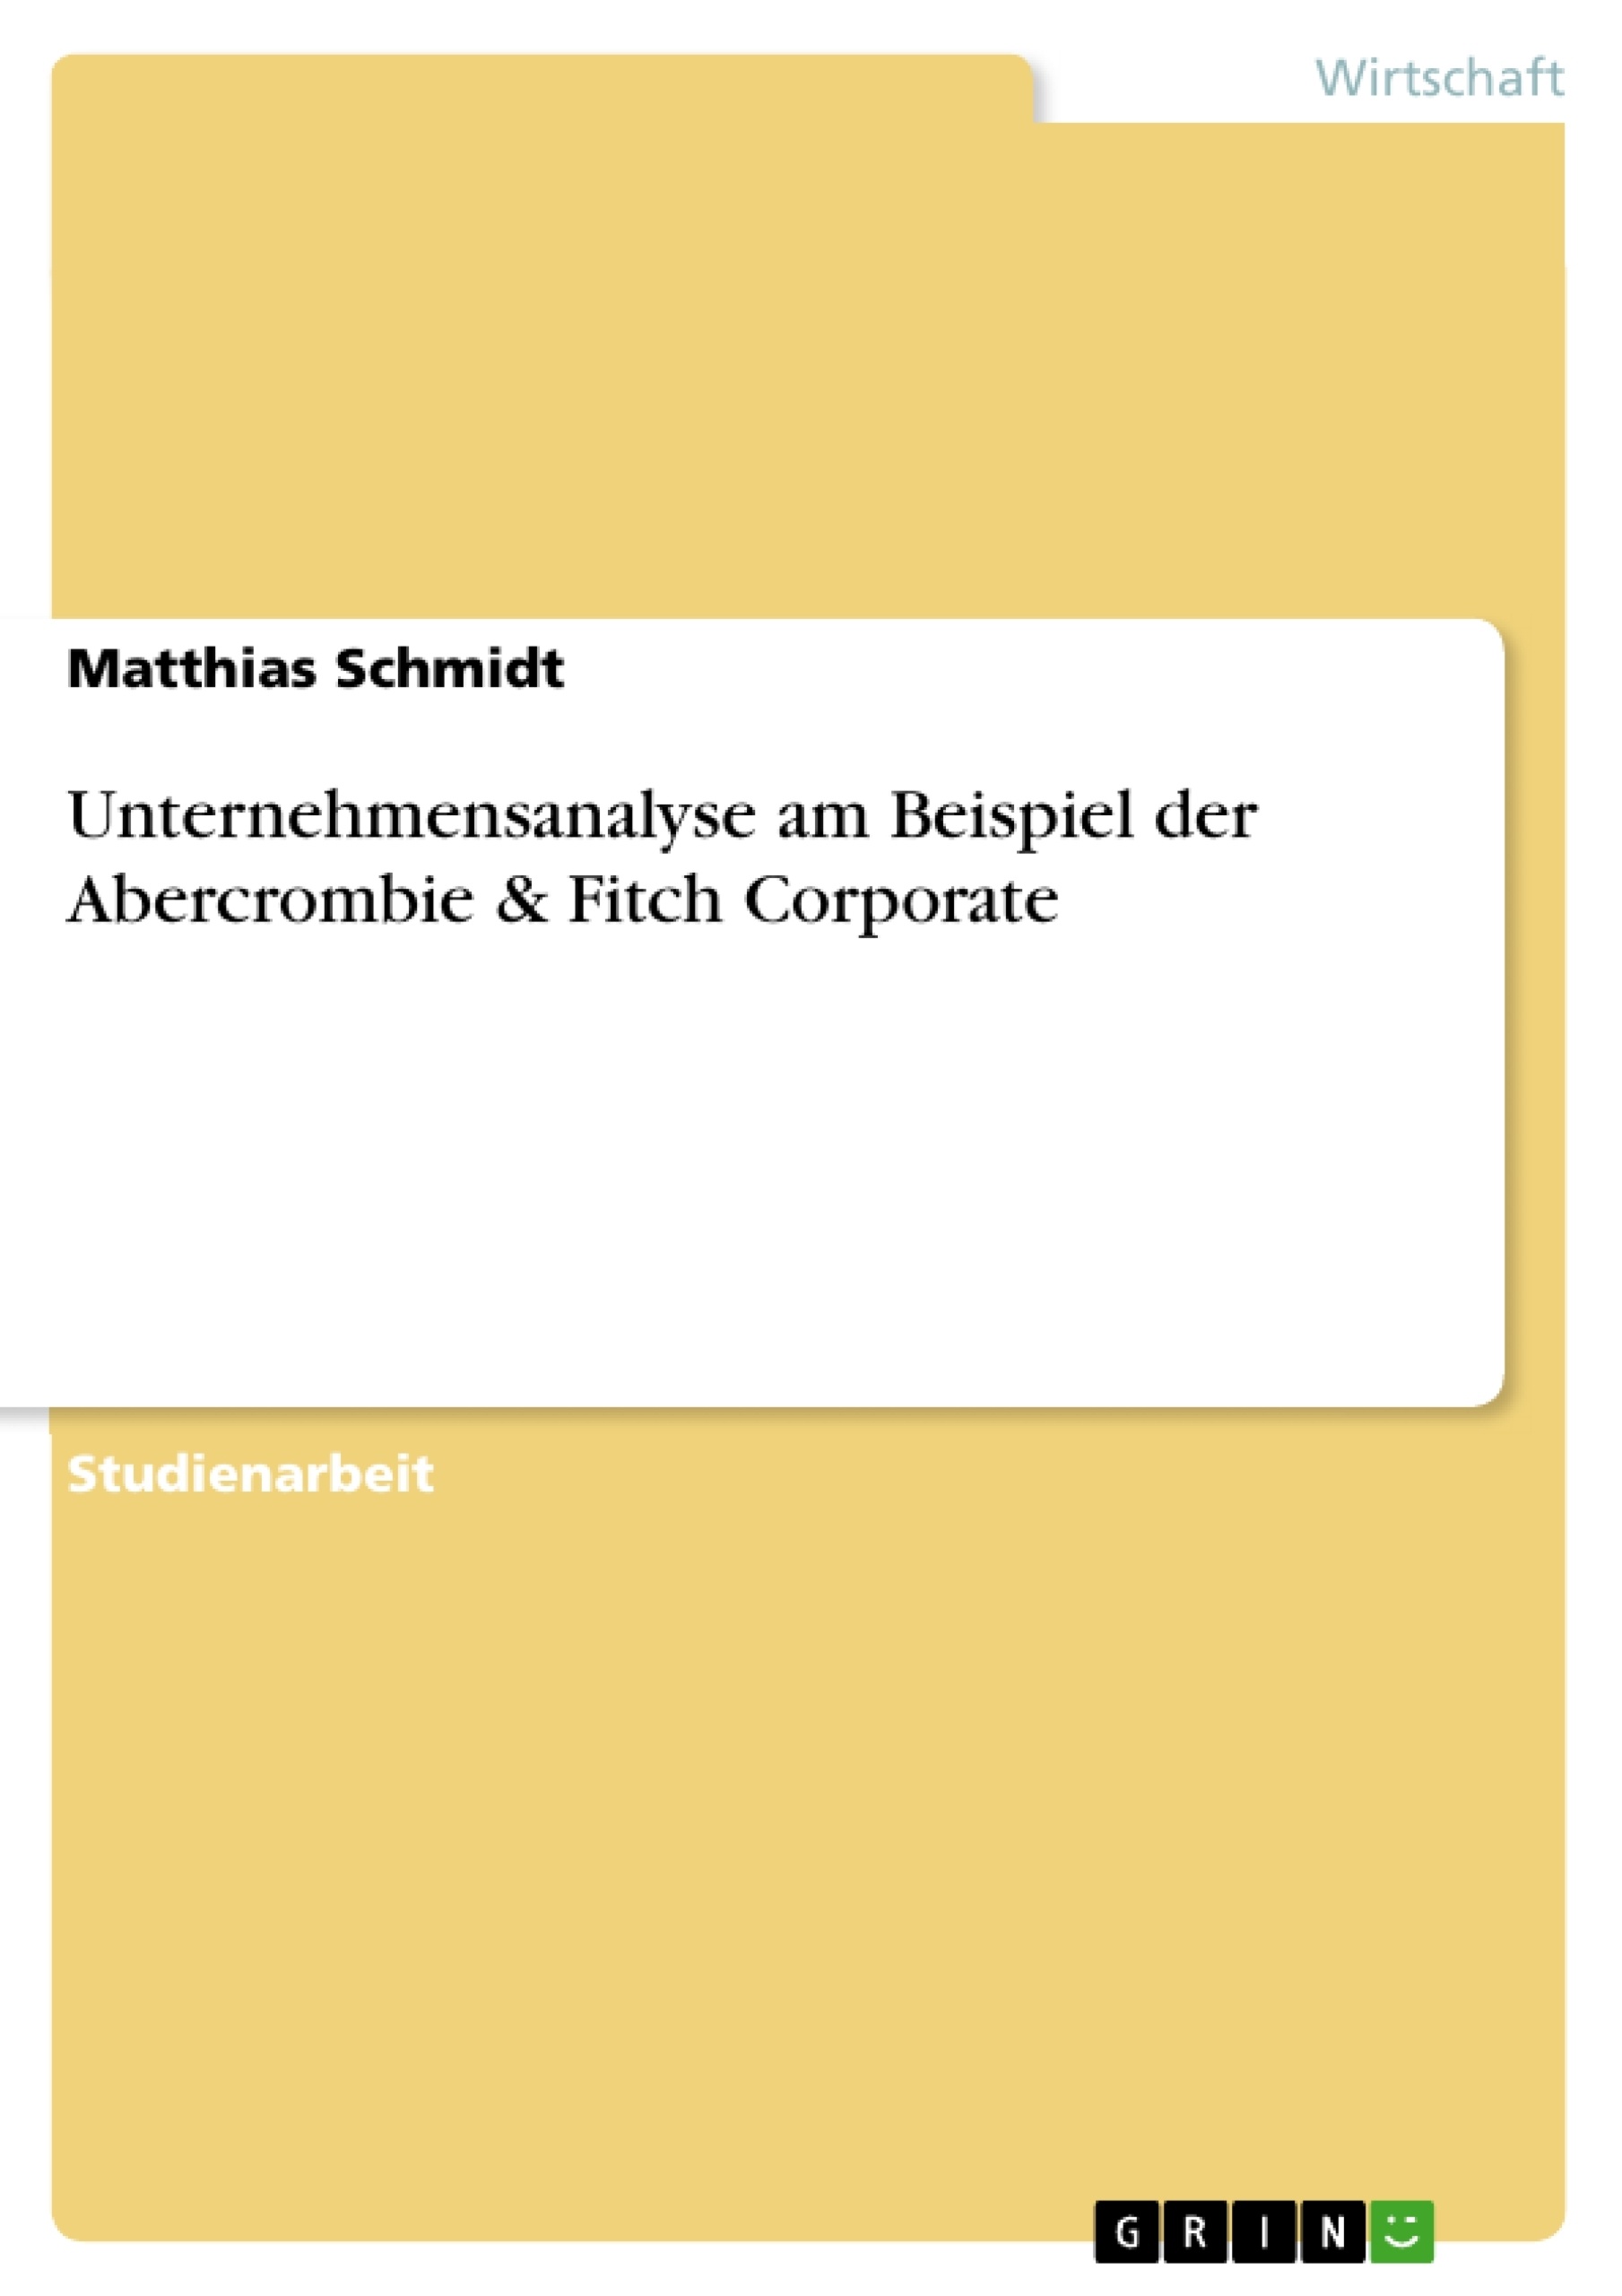 Título: Unternehmensanalyse am Beispiel der Abercrombie & Fitch Corporate